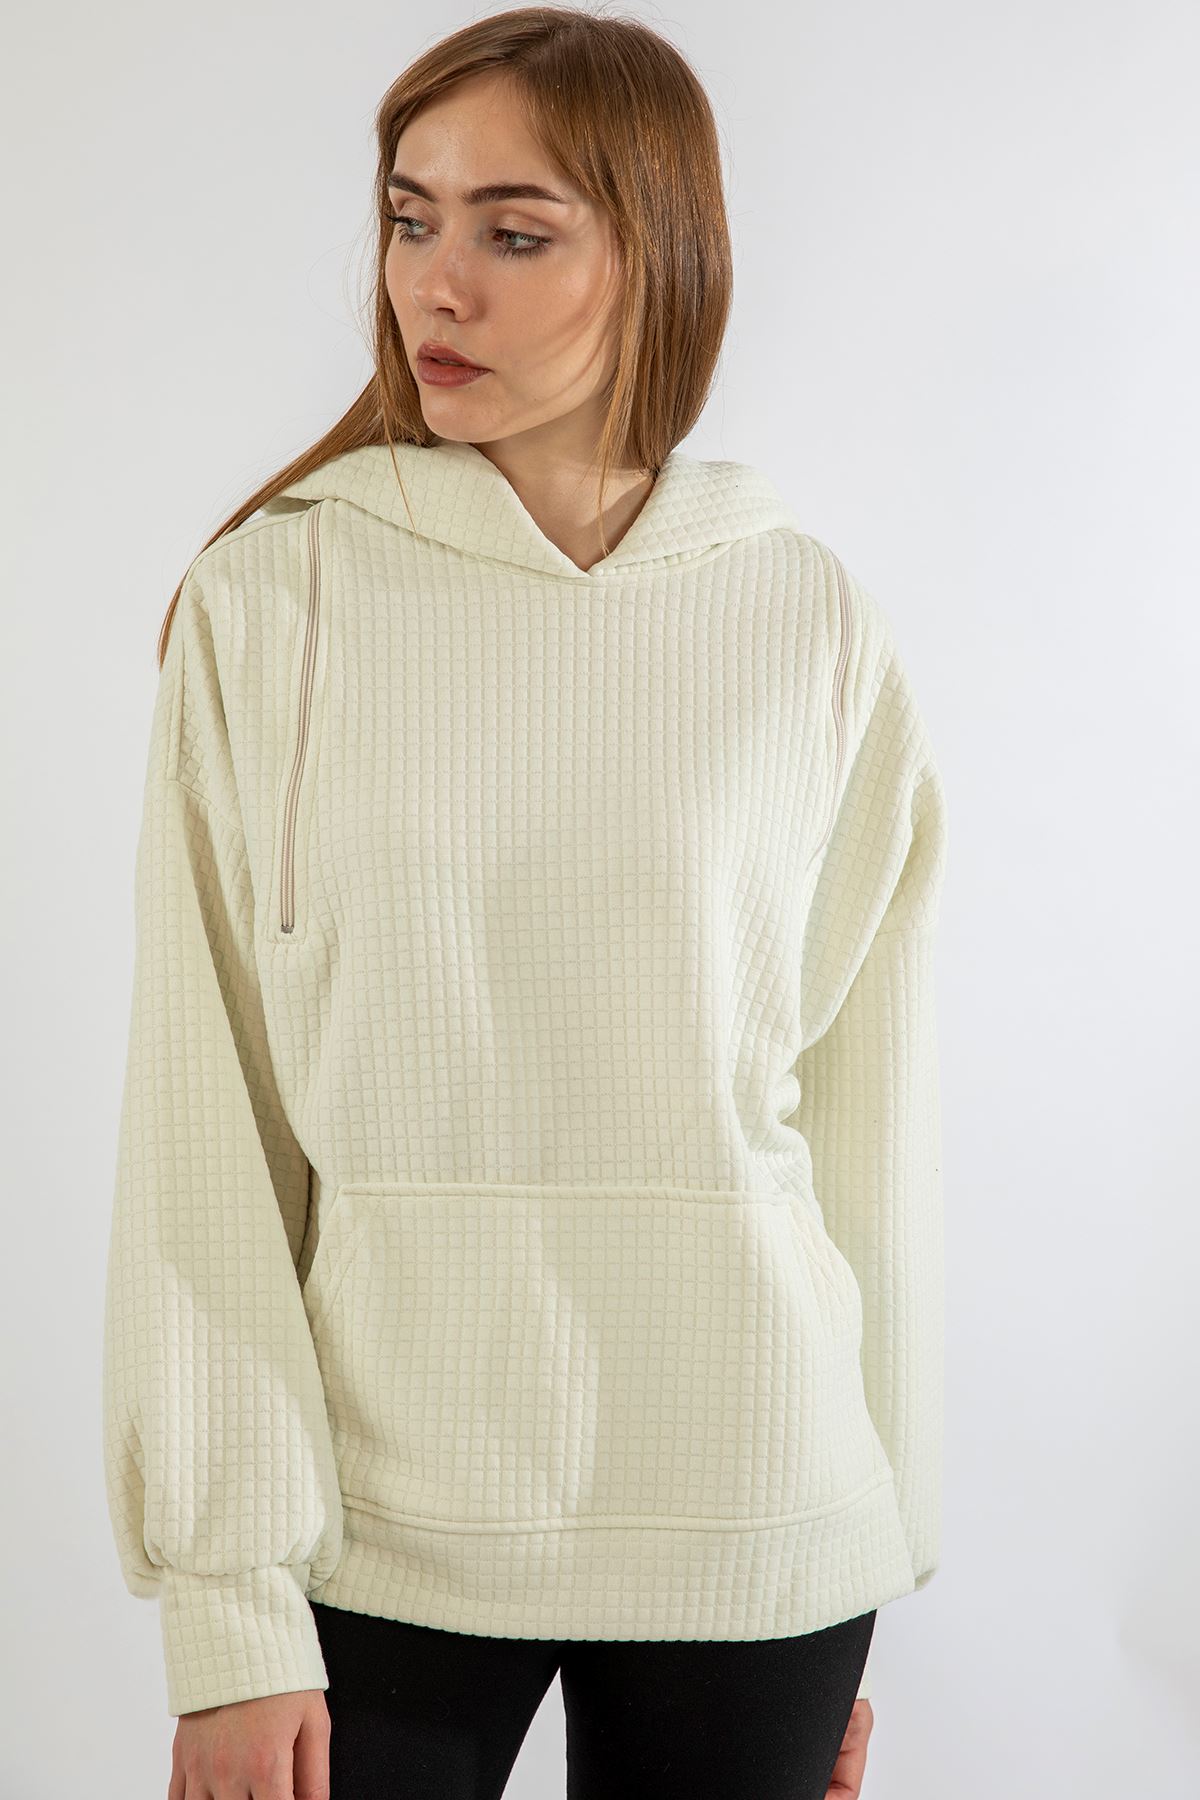 Quilted Fabric Hooded Hip Height Oversize Zip Detailed Women Sweatshirt - Ecru